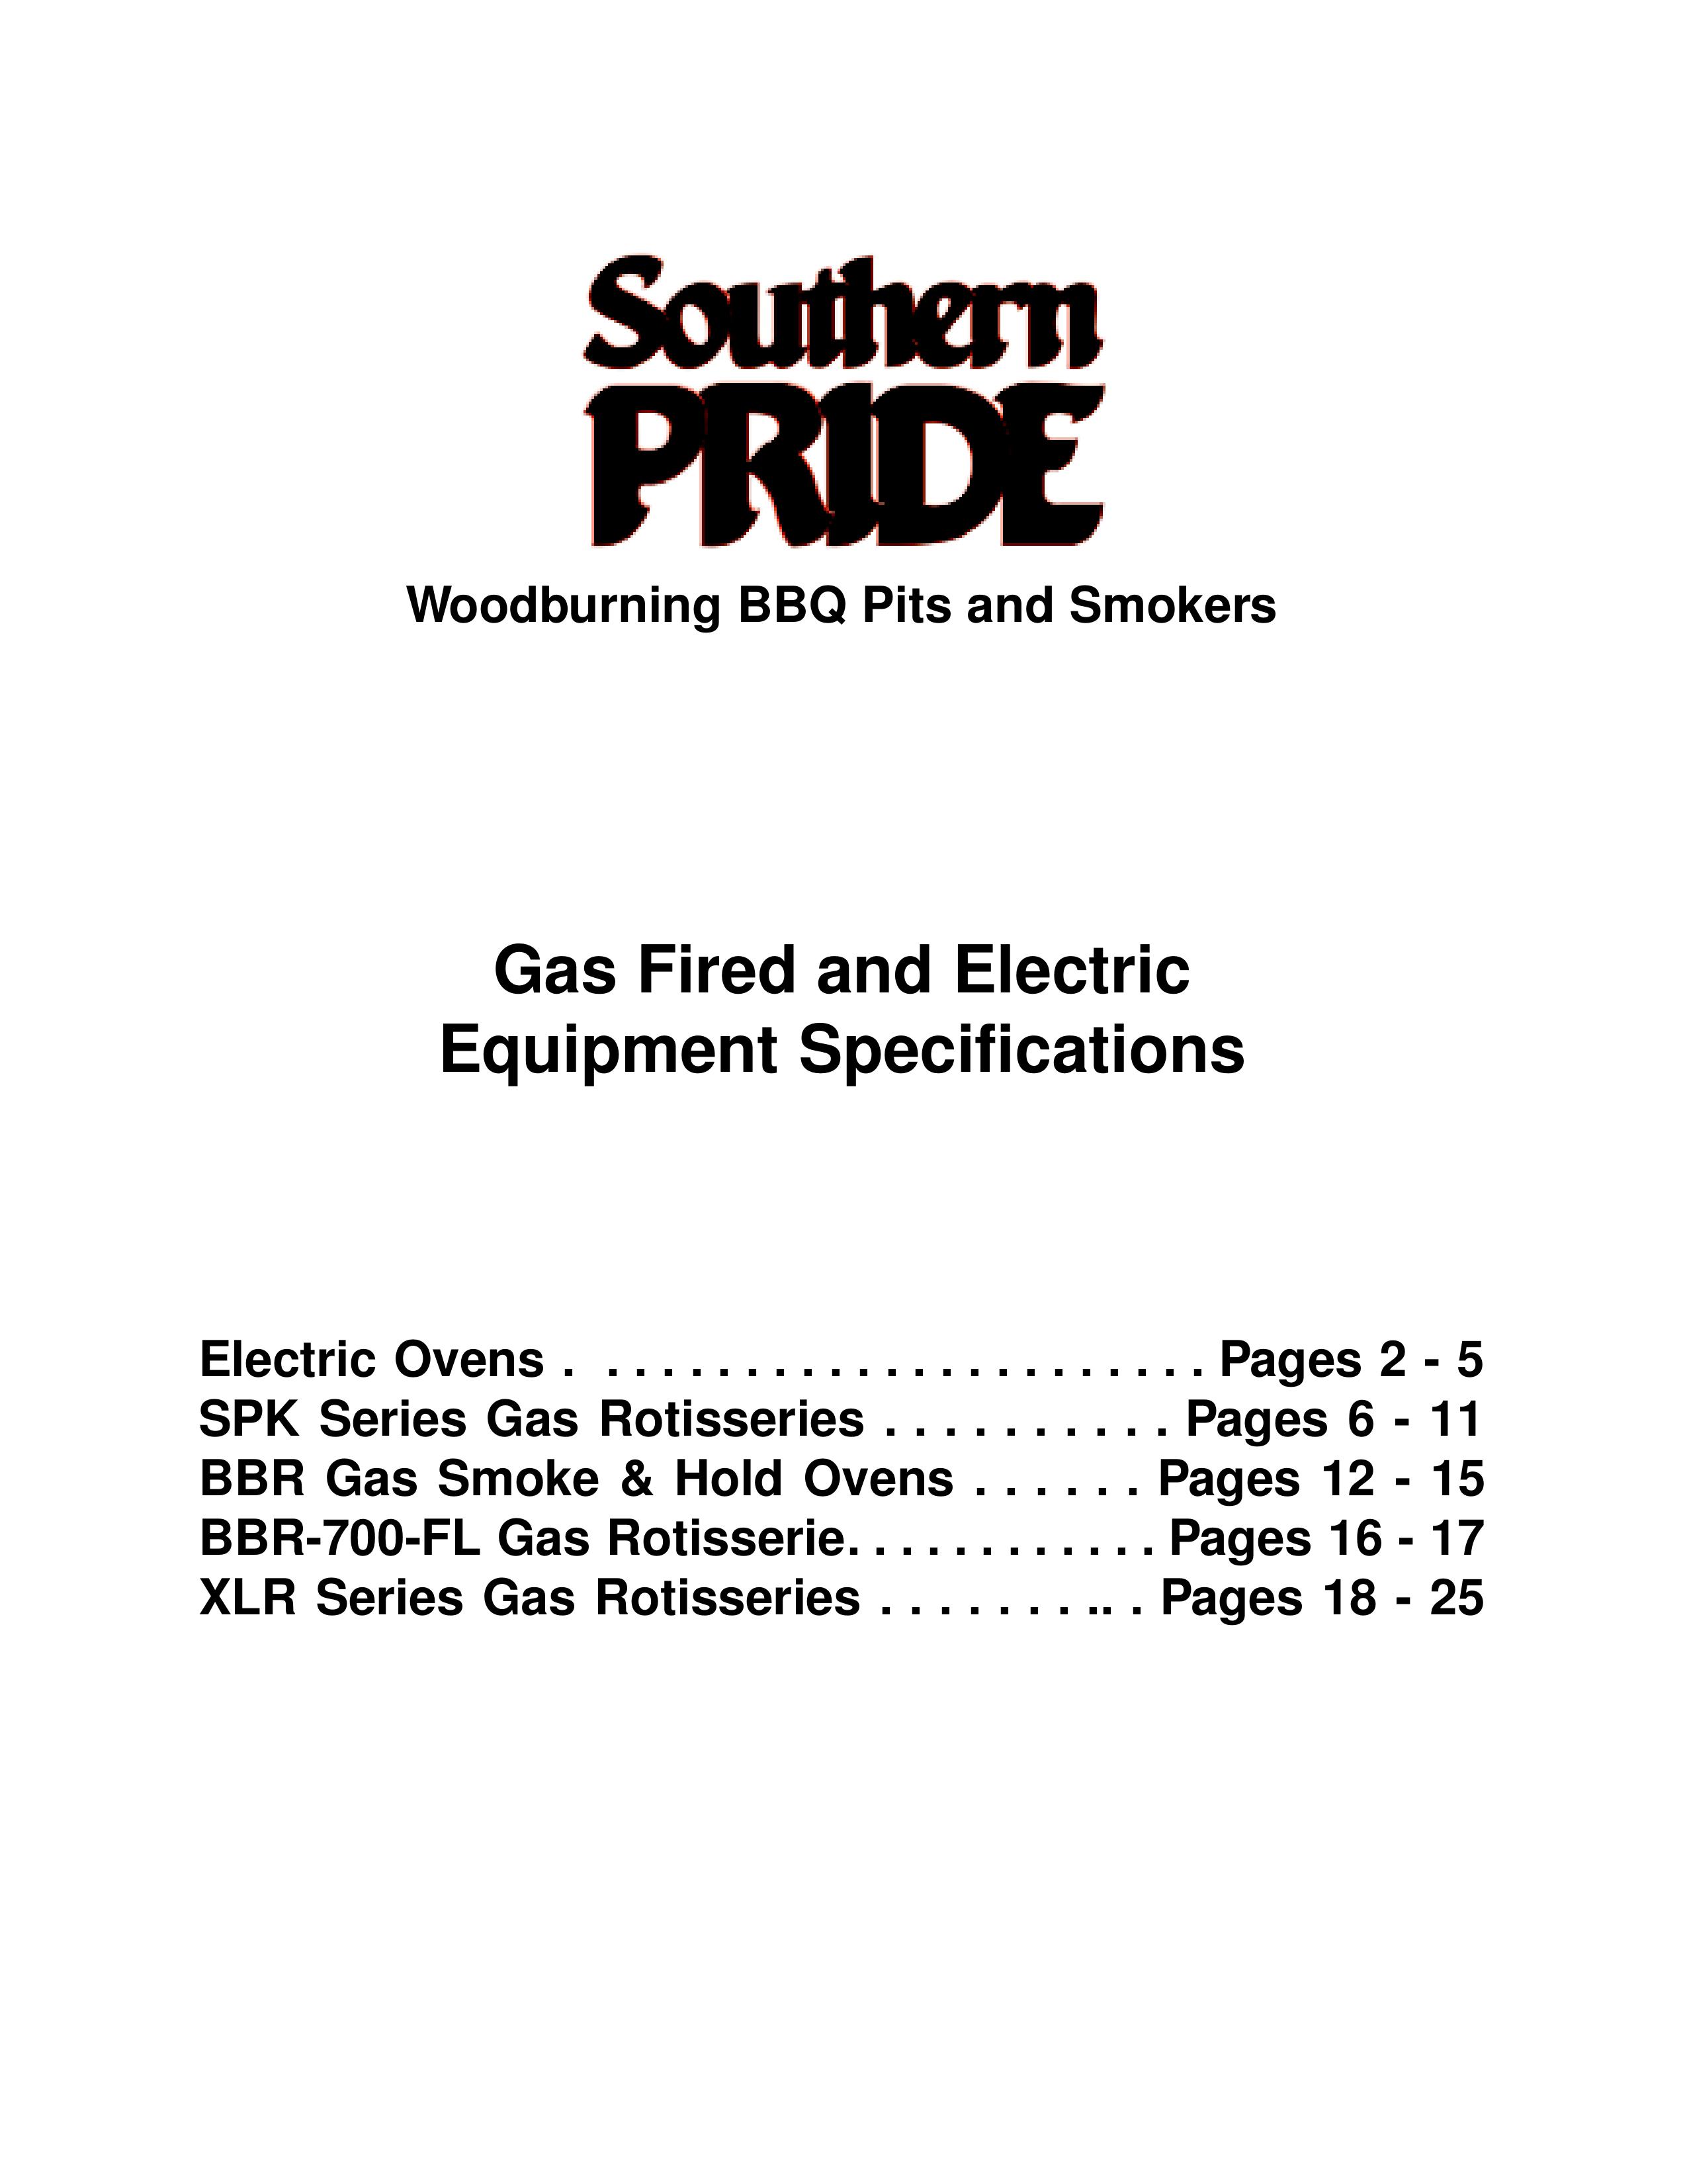 Southern Pride XLR-1400-SL Smoker User Manual